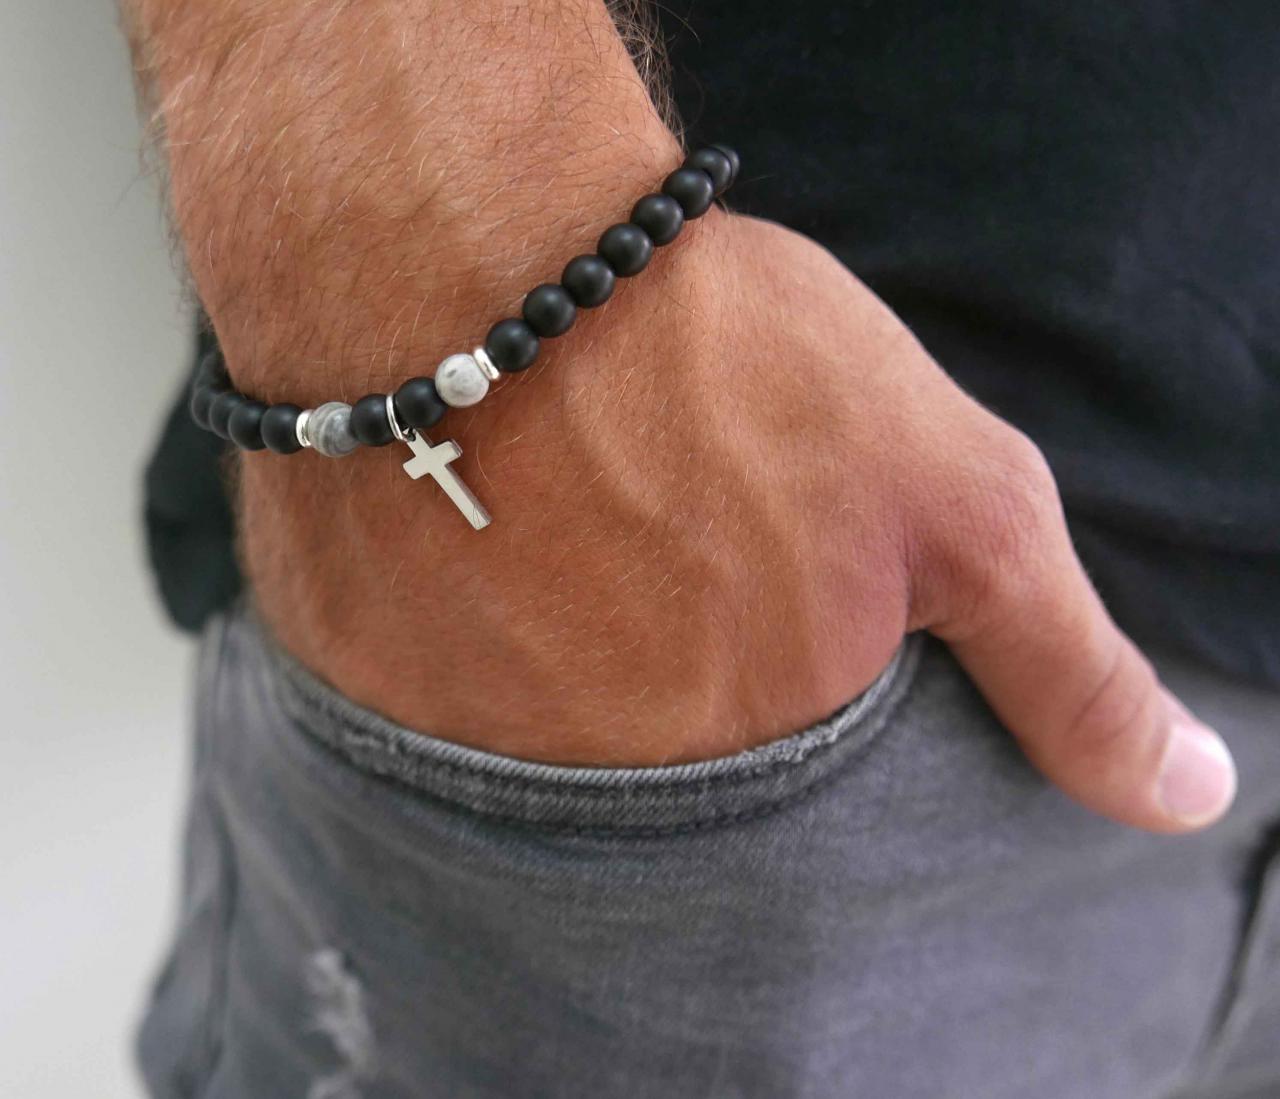 Men's Cross Bracelet - Men's Religious Bracelet - Men's Christian Bracelet - Men's Beaded Bracelet -